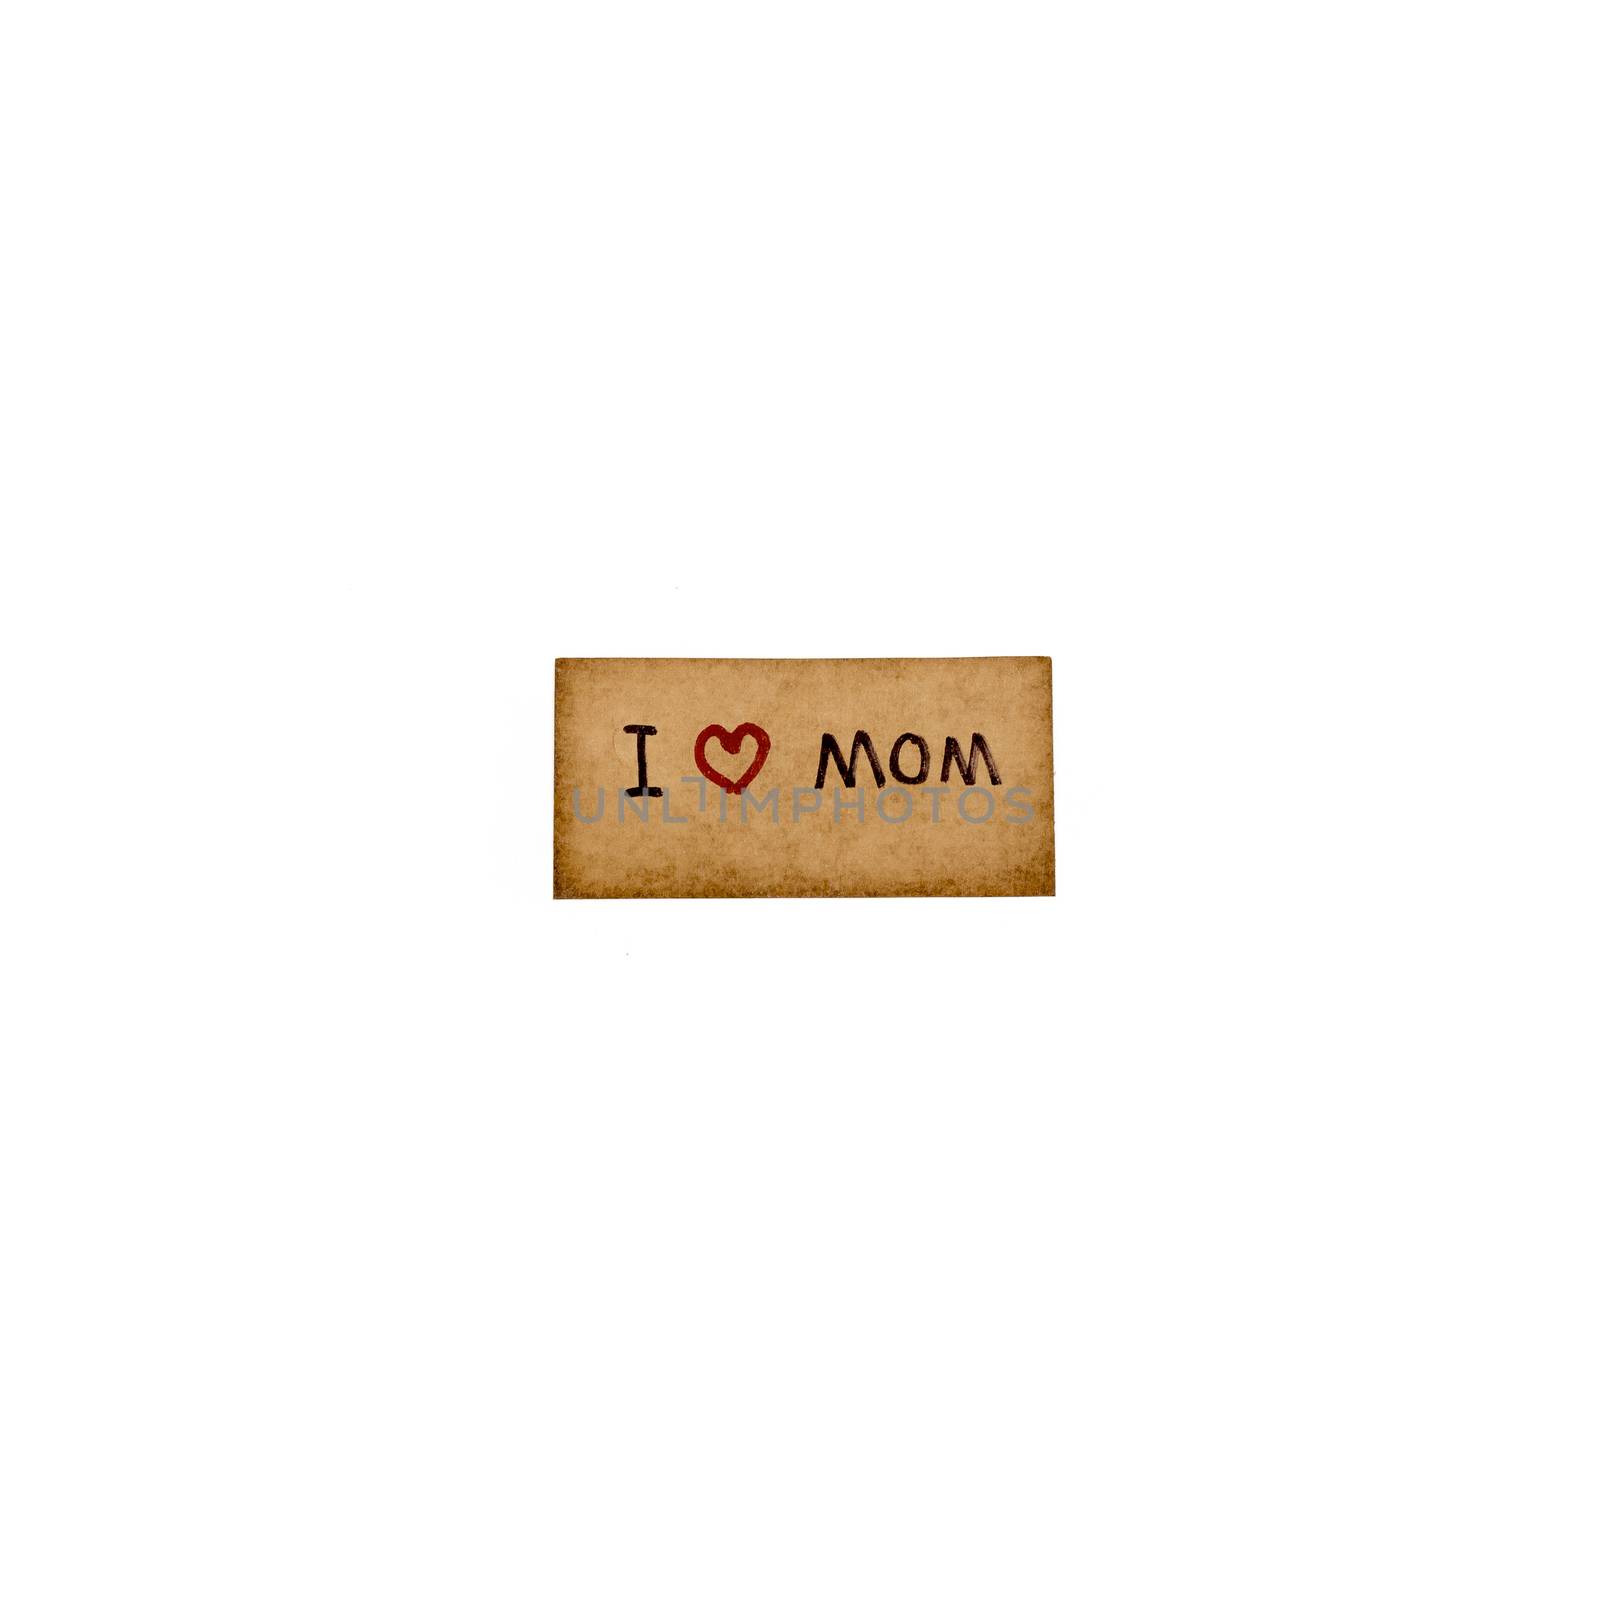 I love mom card by ammza12